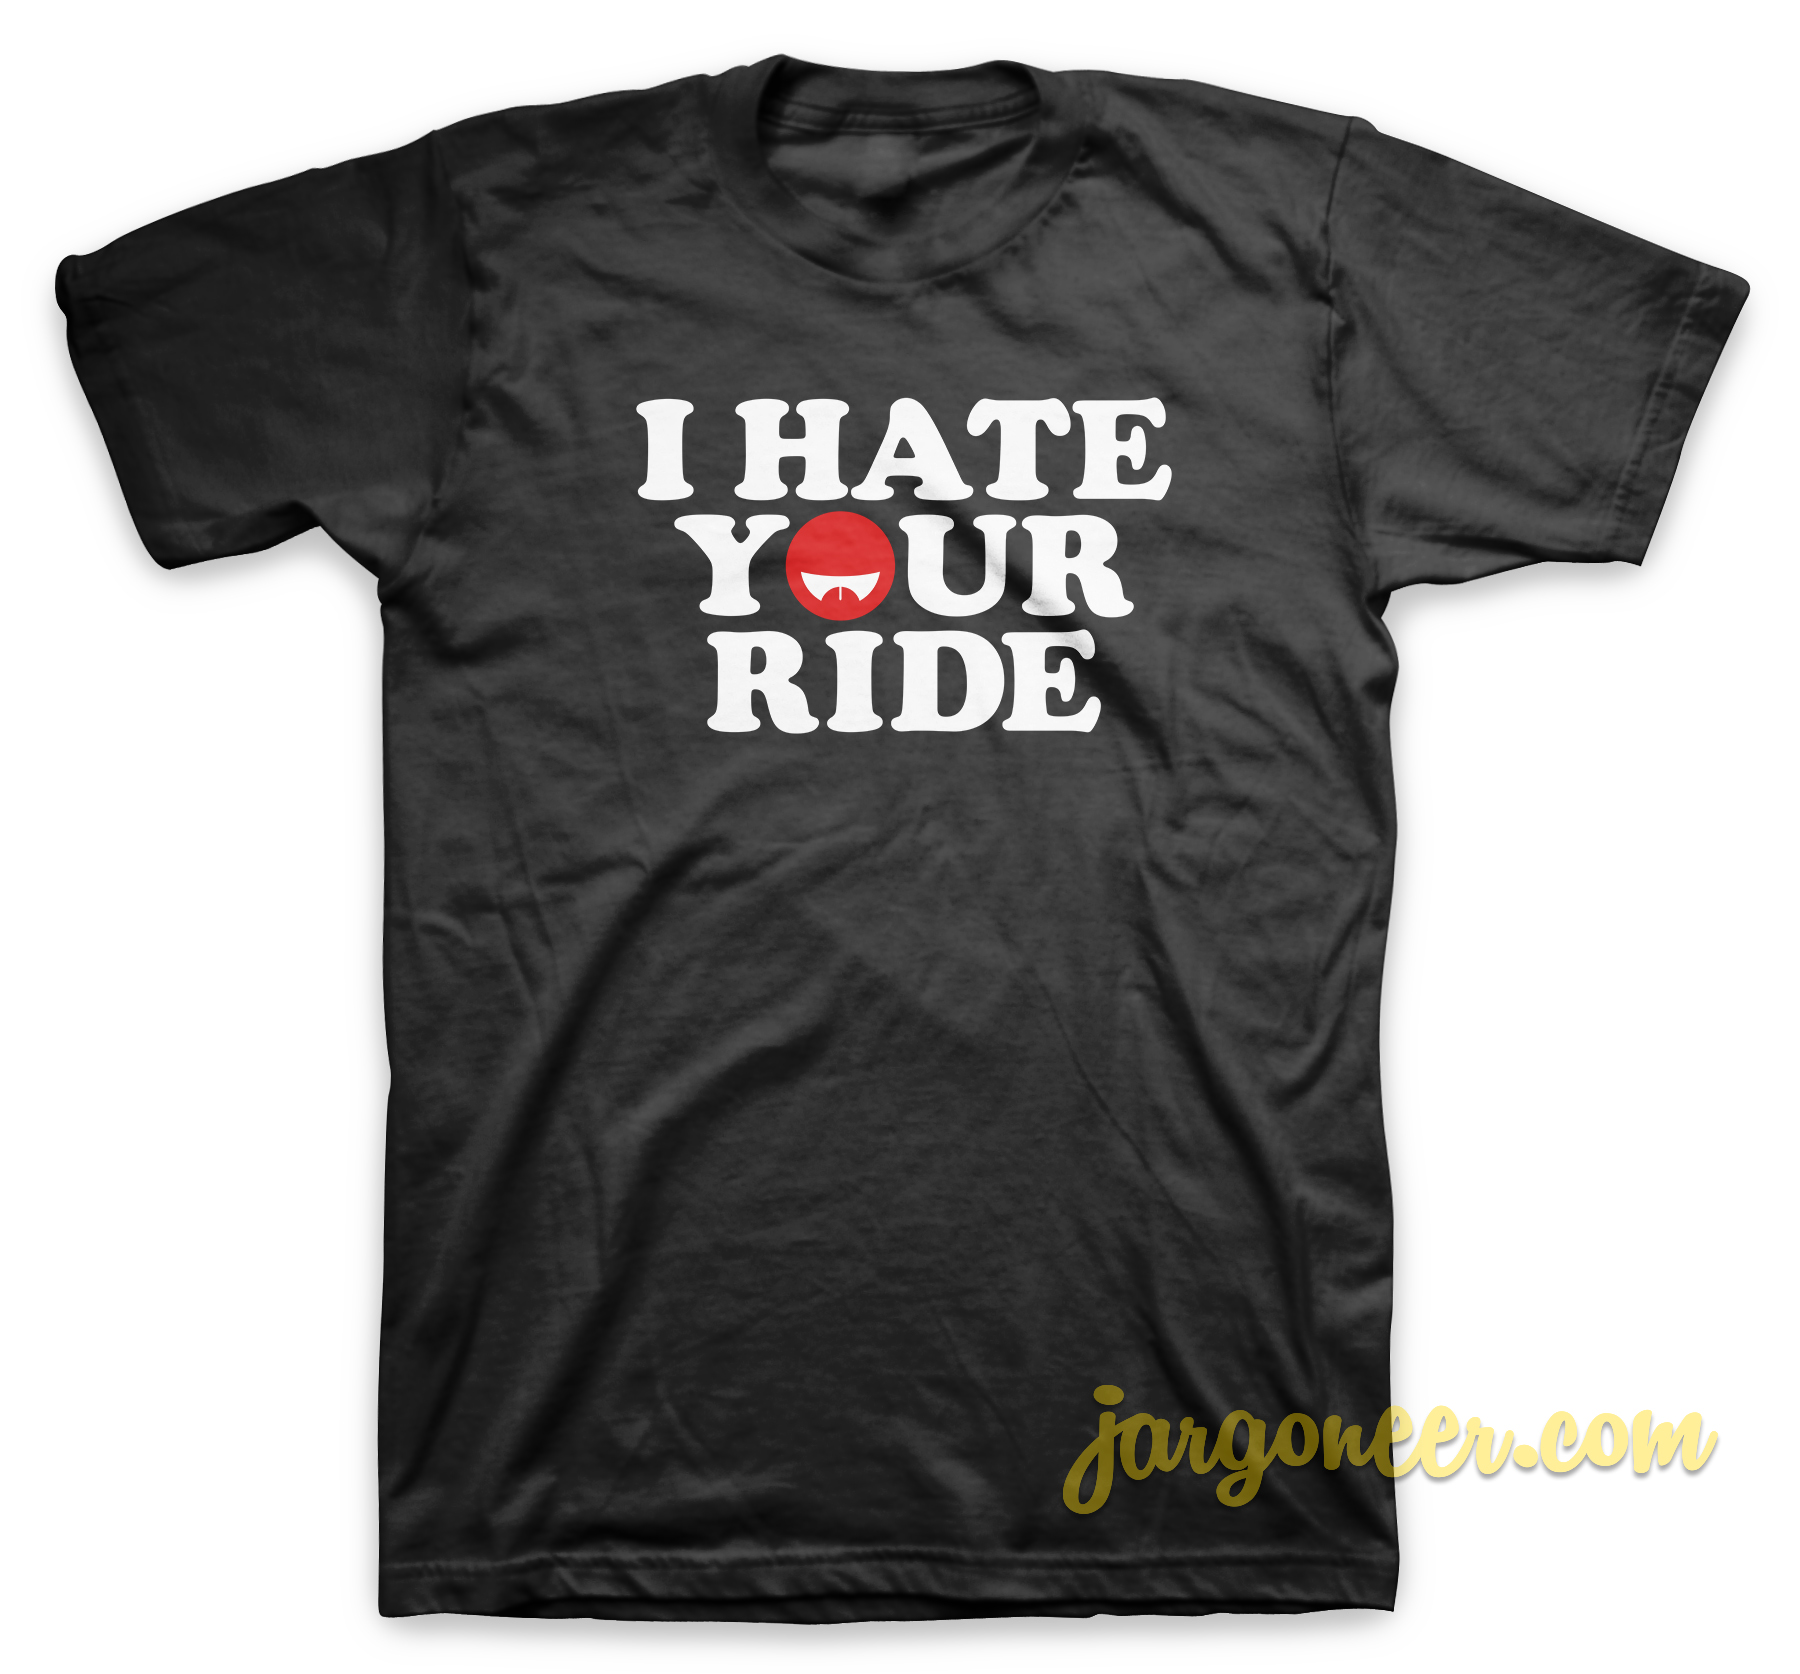 I Hate Your Ride Black T Shirt - Shop Unique Graphic Cool Shirt Designs